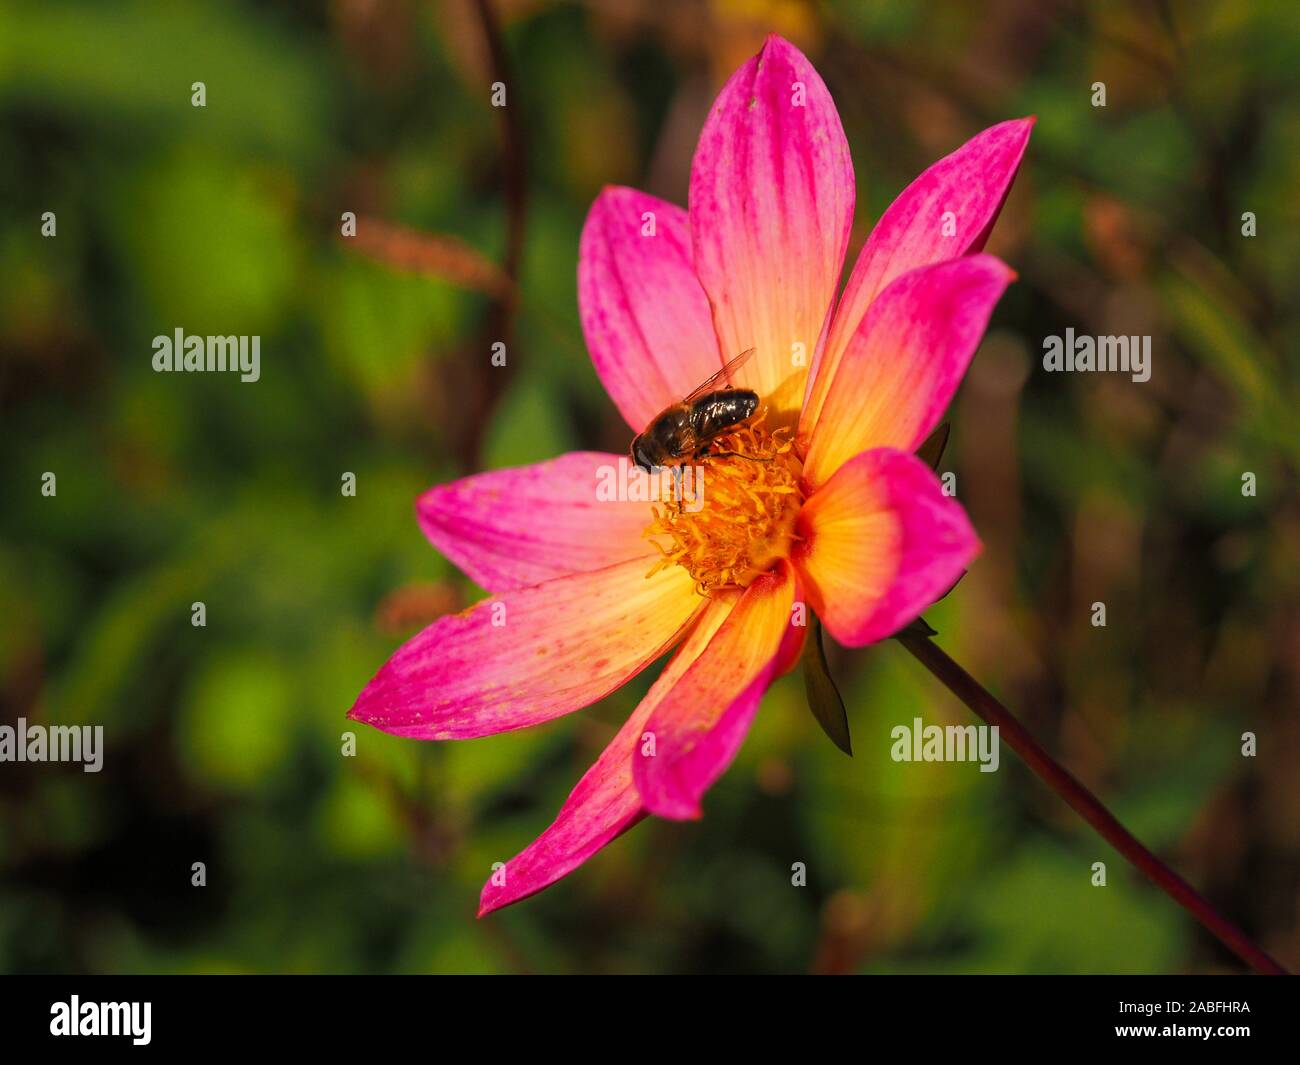 Jolie fleur Dahlia simple avec pétales de rose et jaune, et une abeille dans un jardin d'automne Banque D'Images